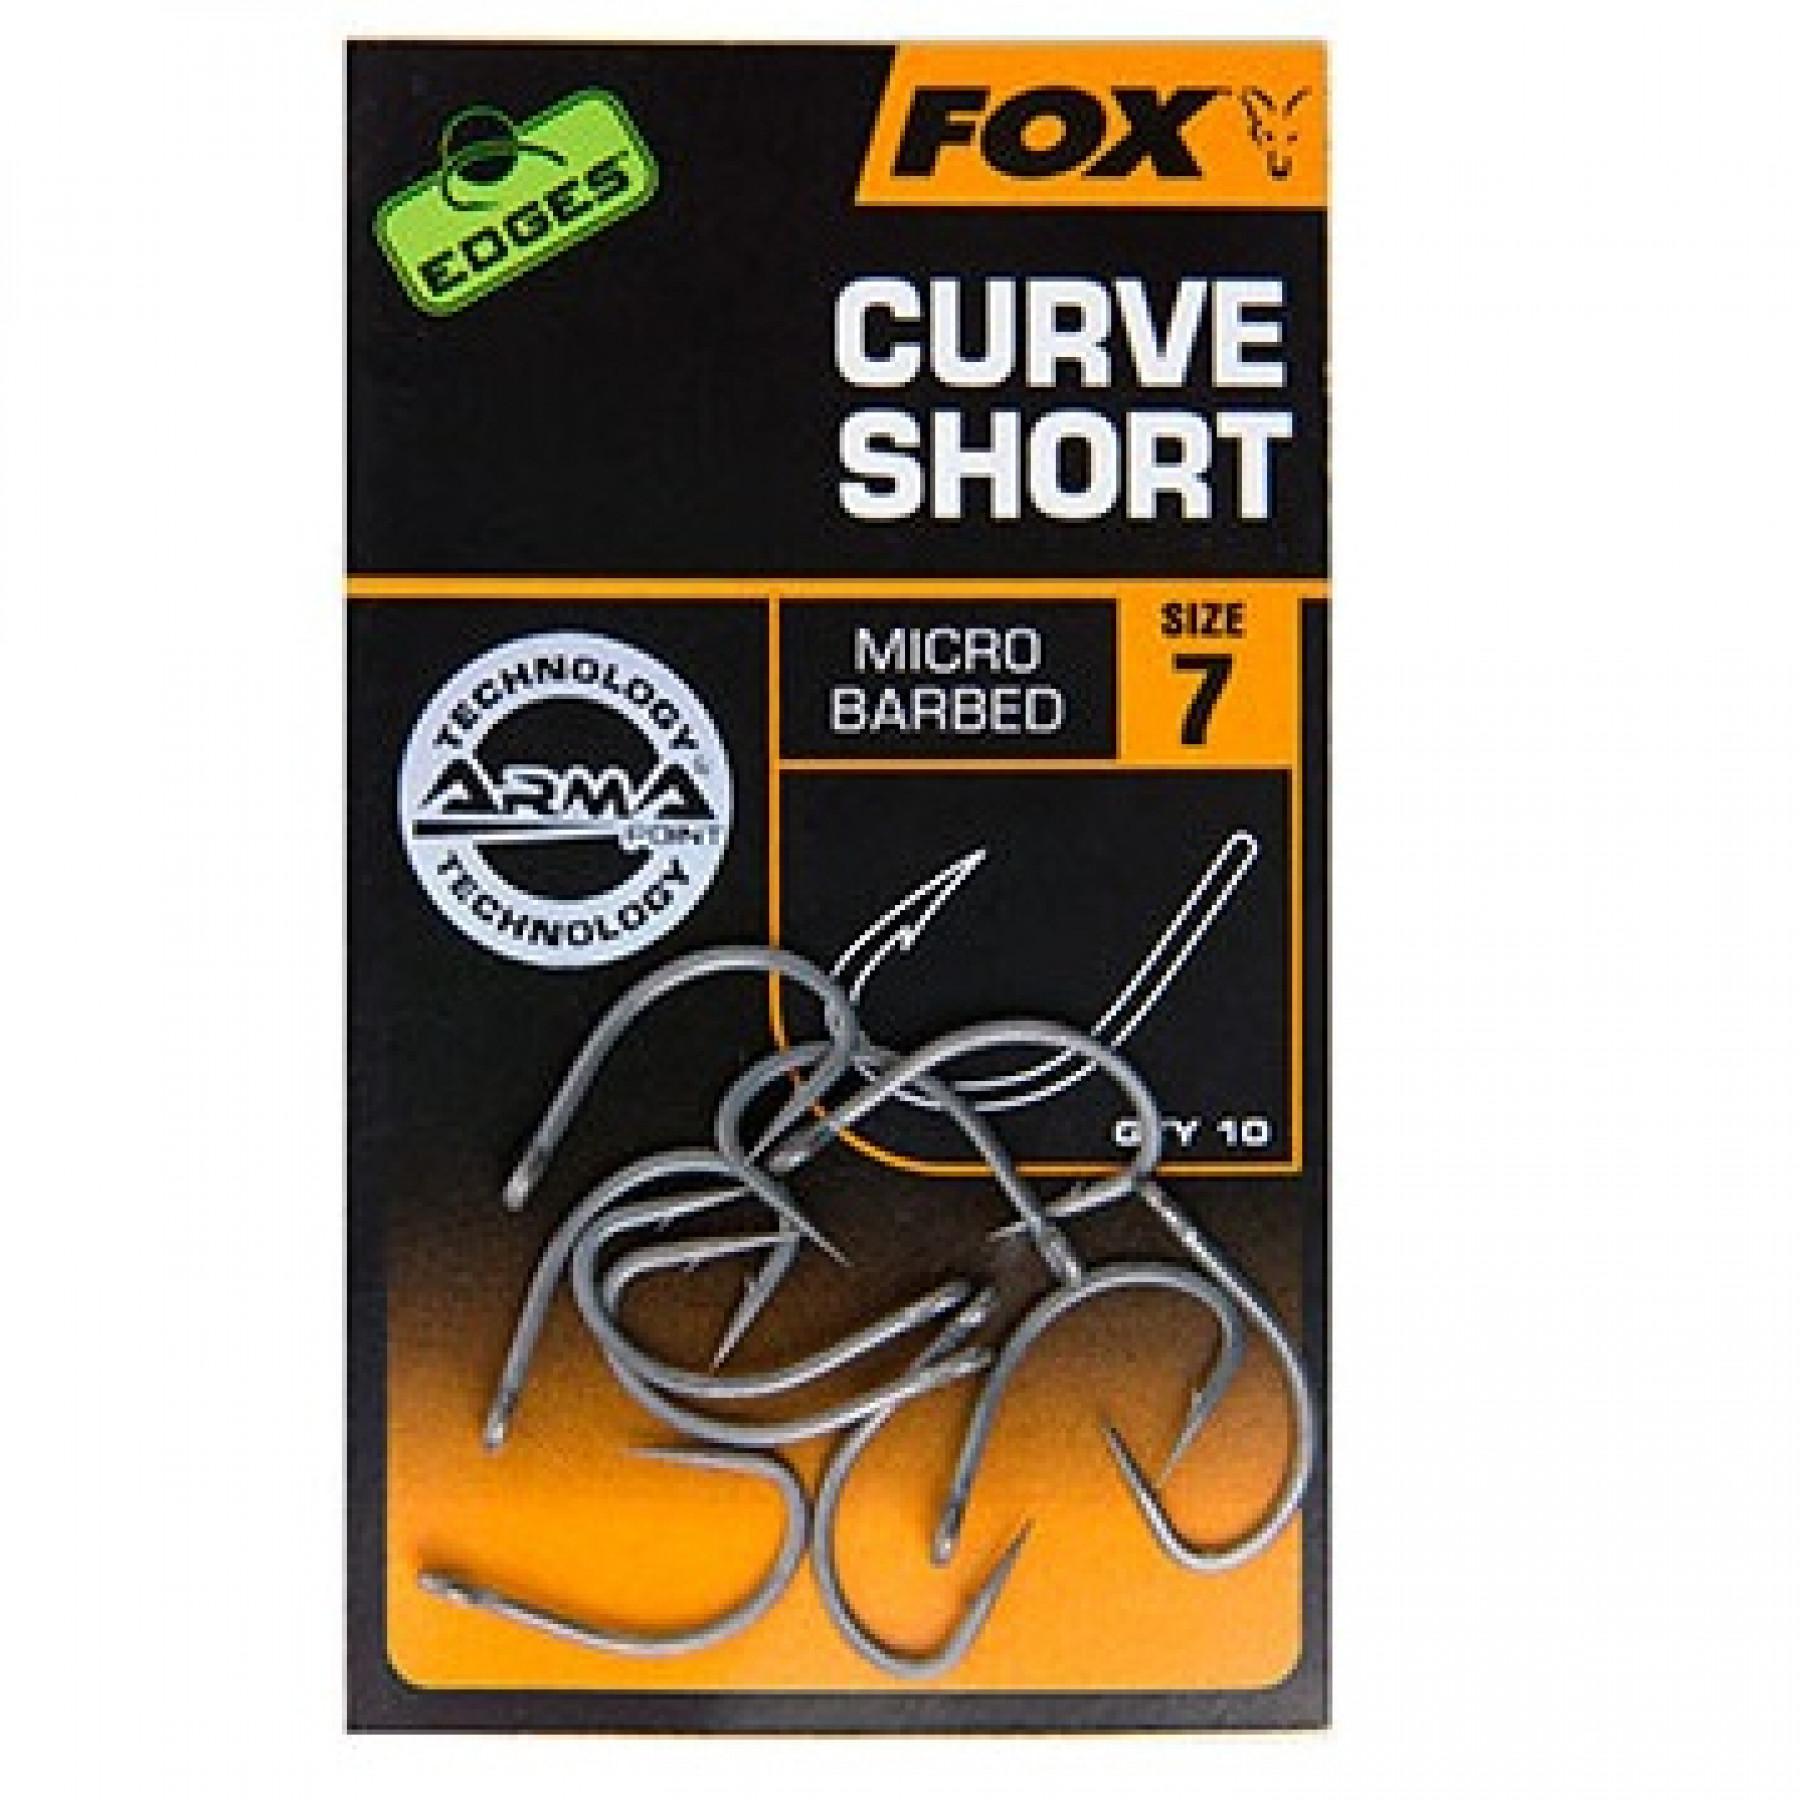 Hak Fox Curve Short Edges taille 7